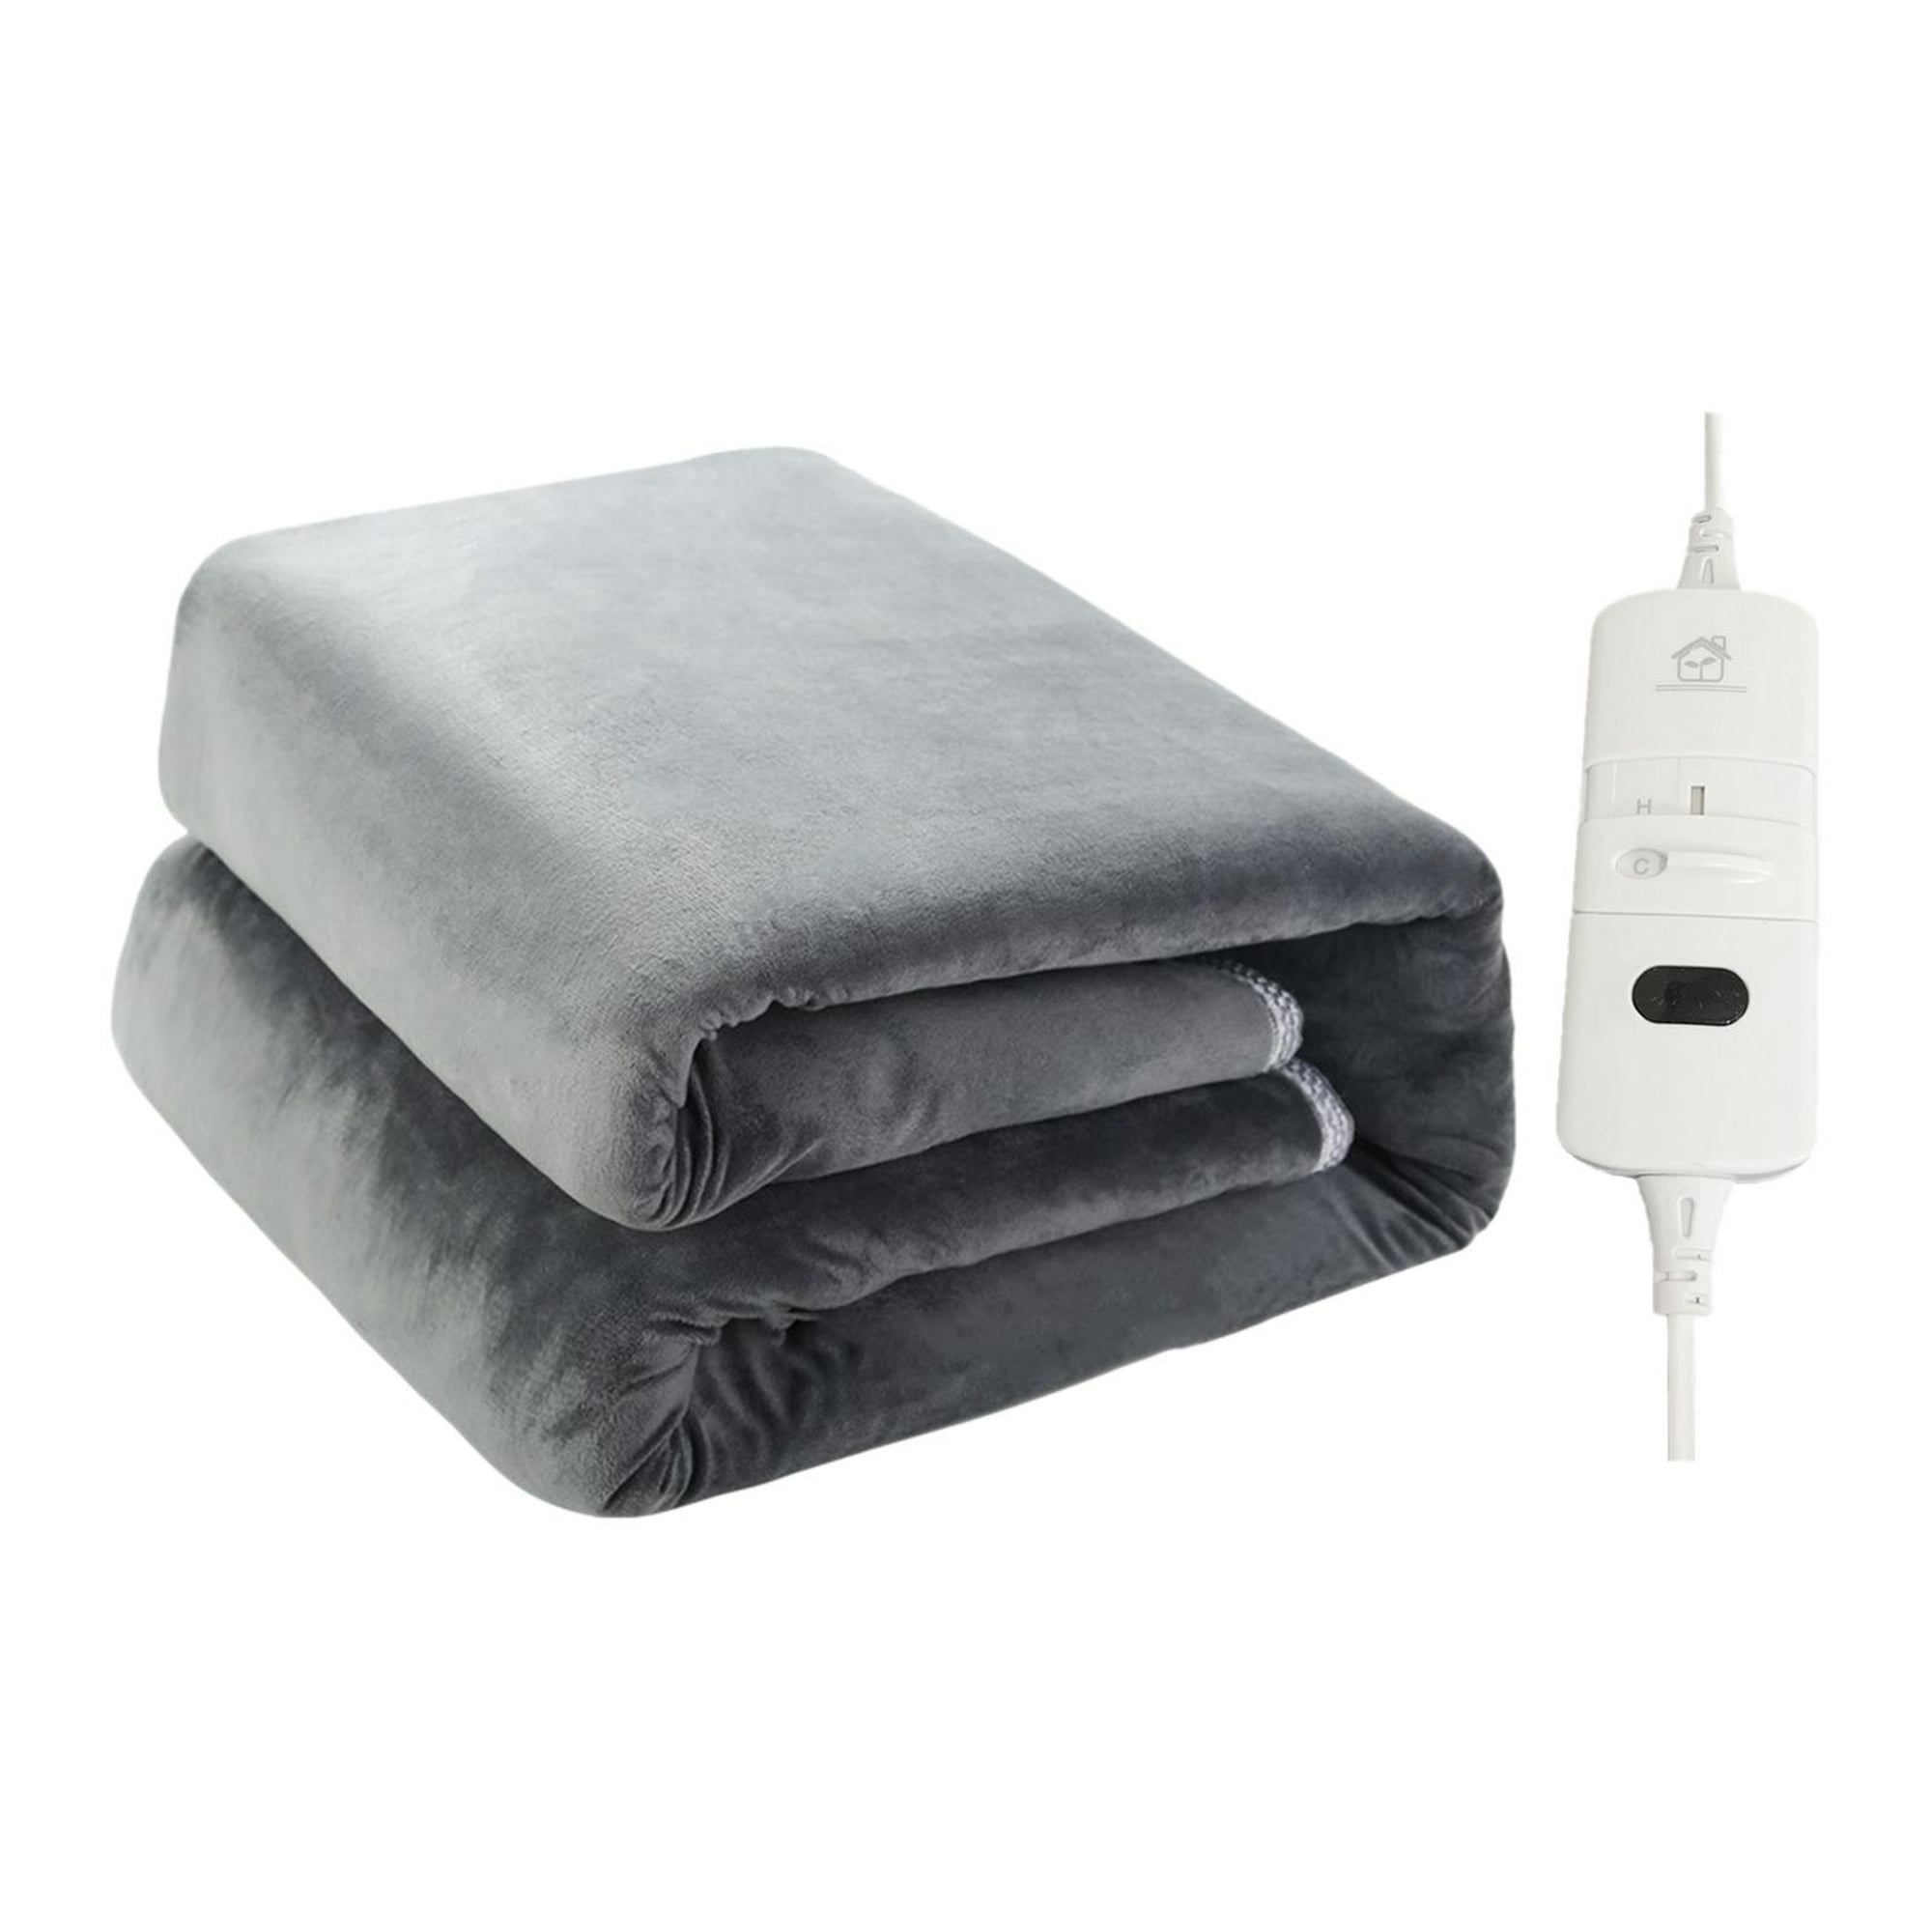 Mantas térmicas eléctricas de tamaño único, calentador de cama